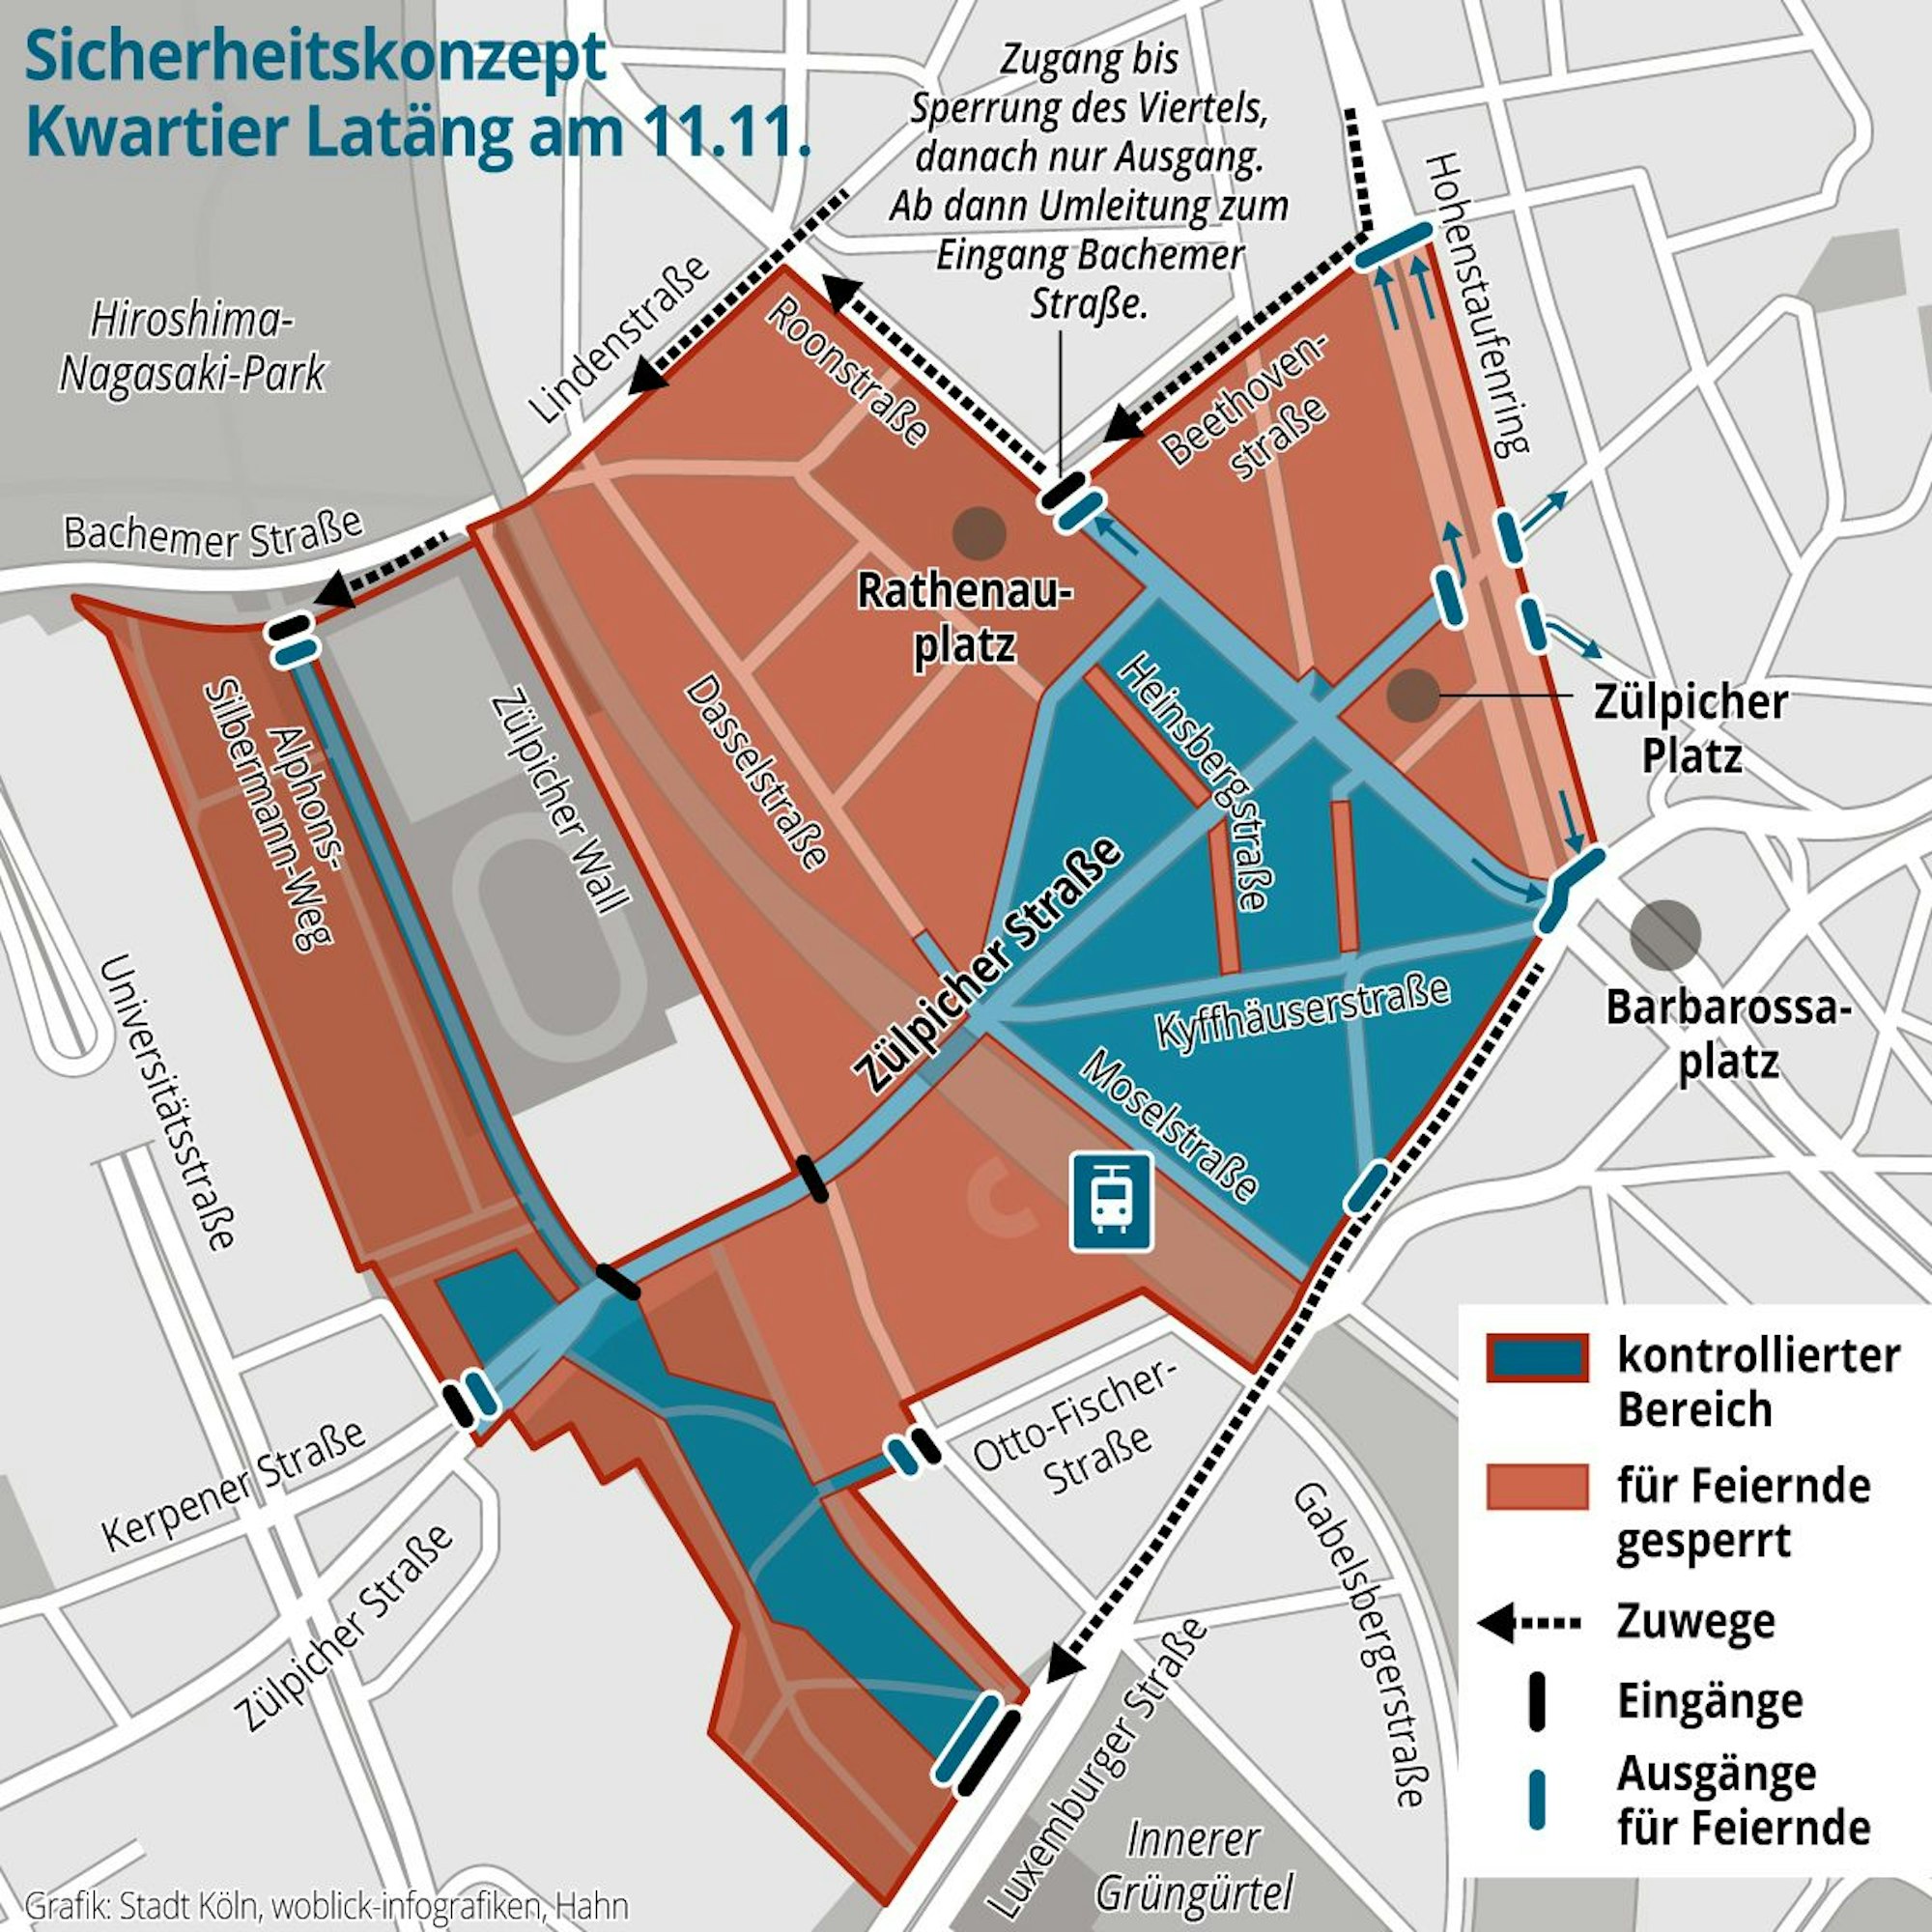 Karte des Sicherheitskonzepts Kwartier Latäng am 11.11.